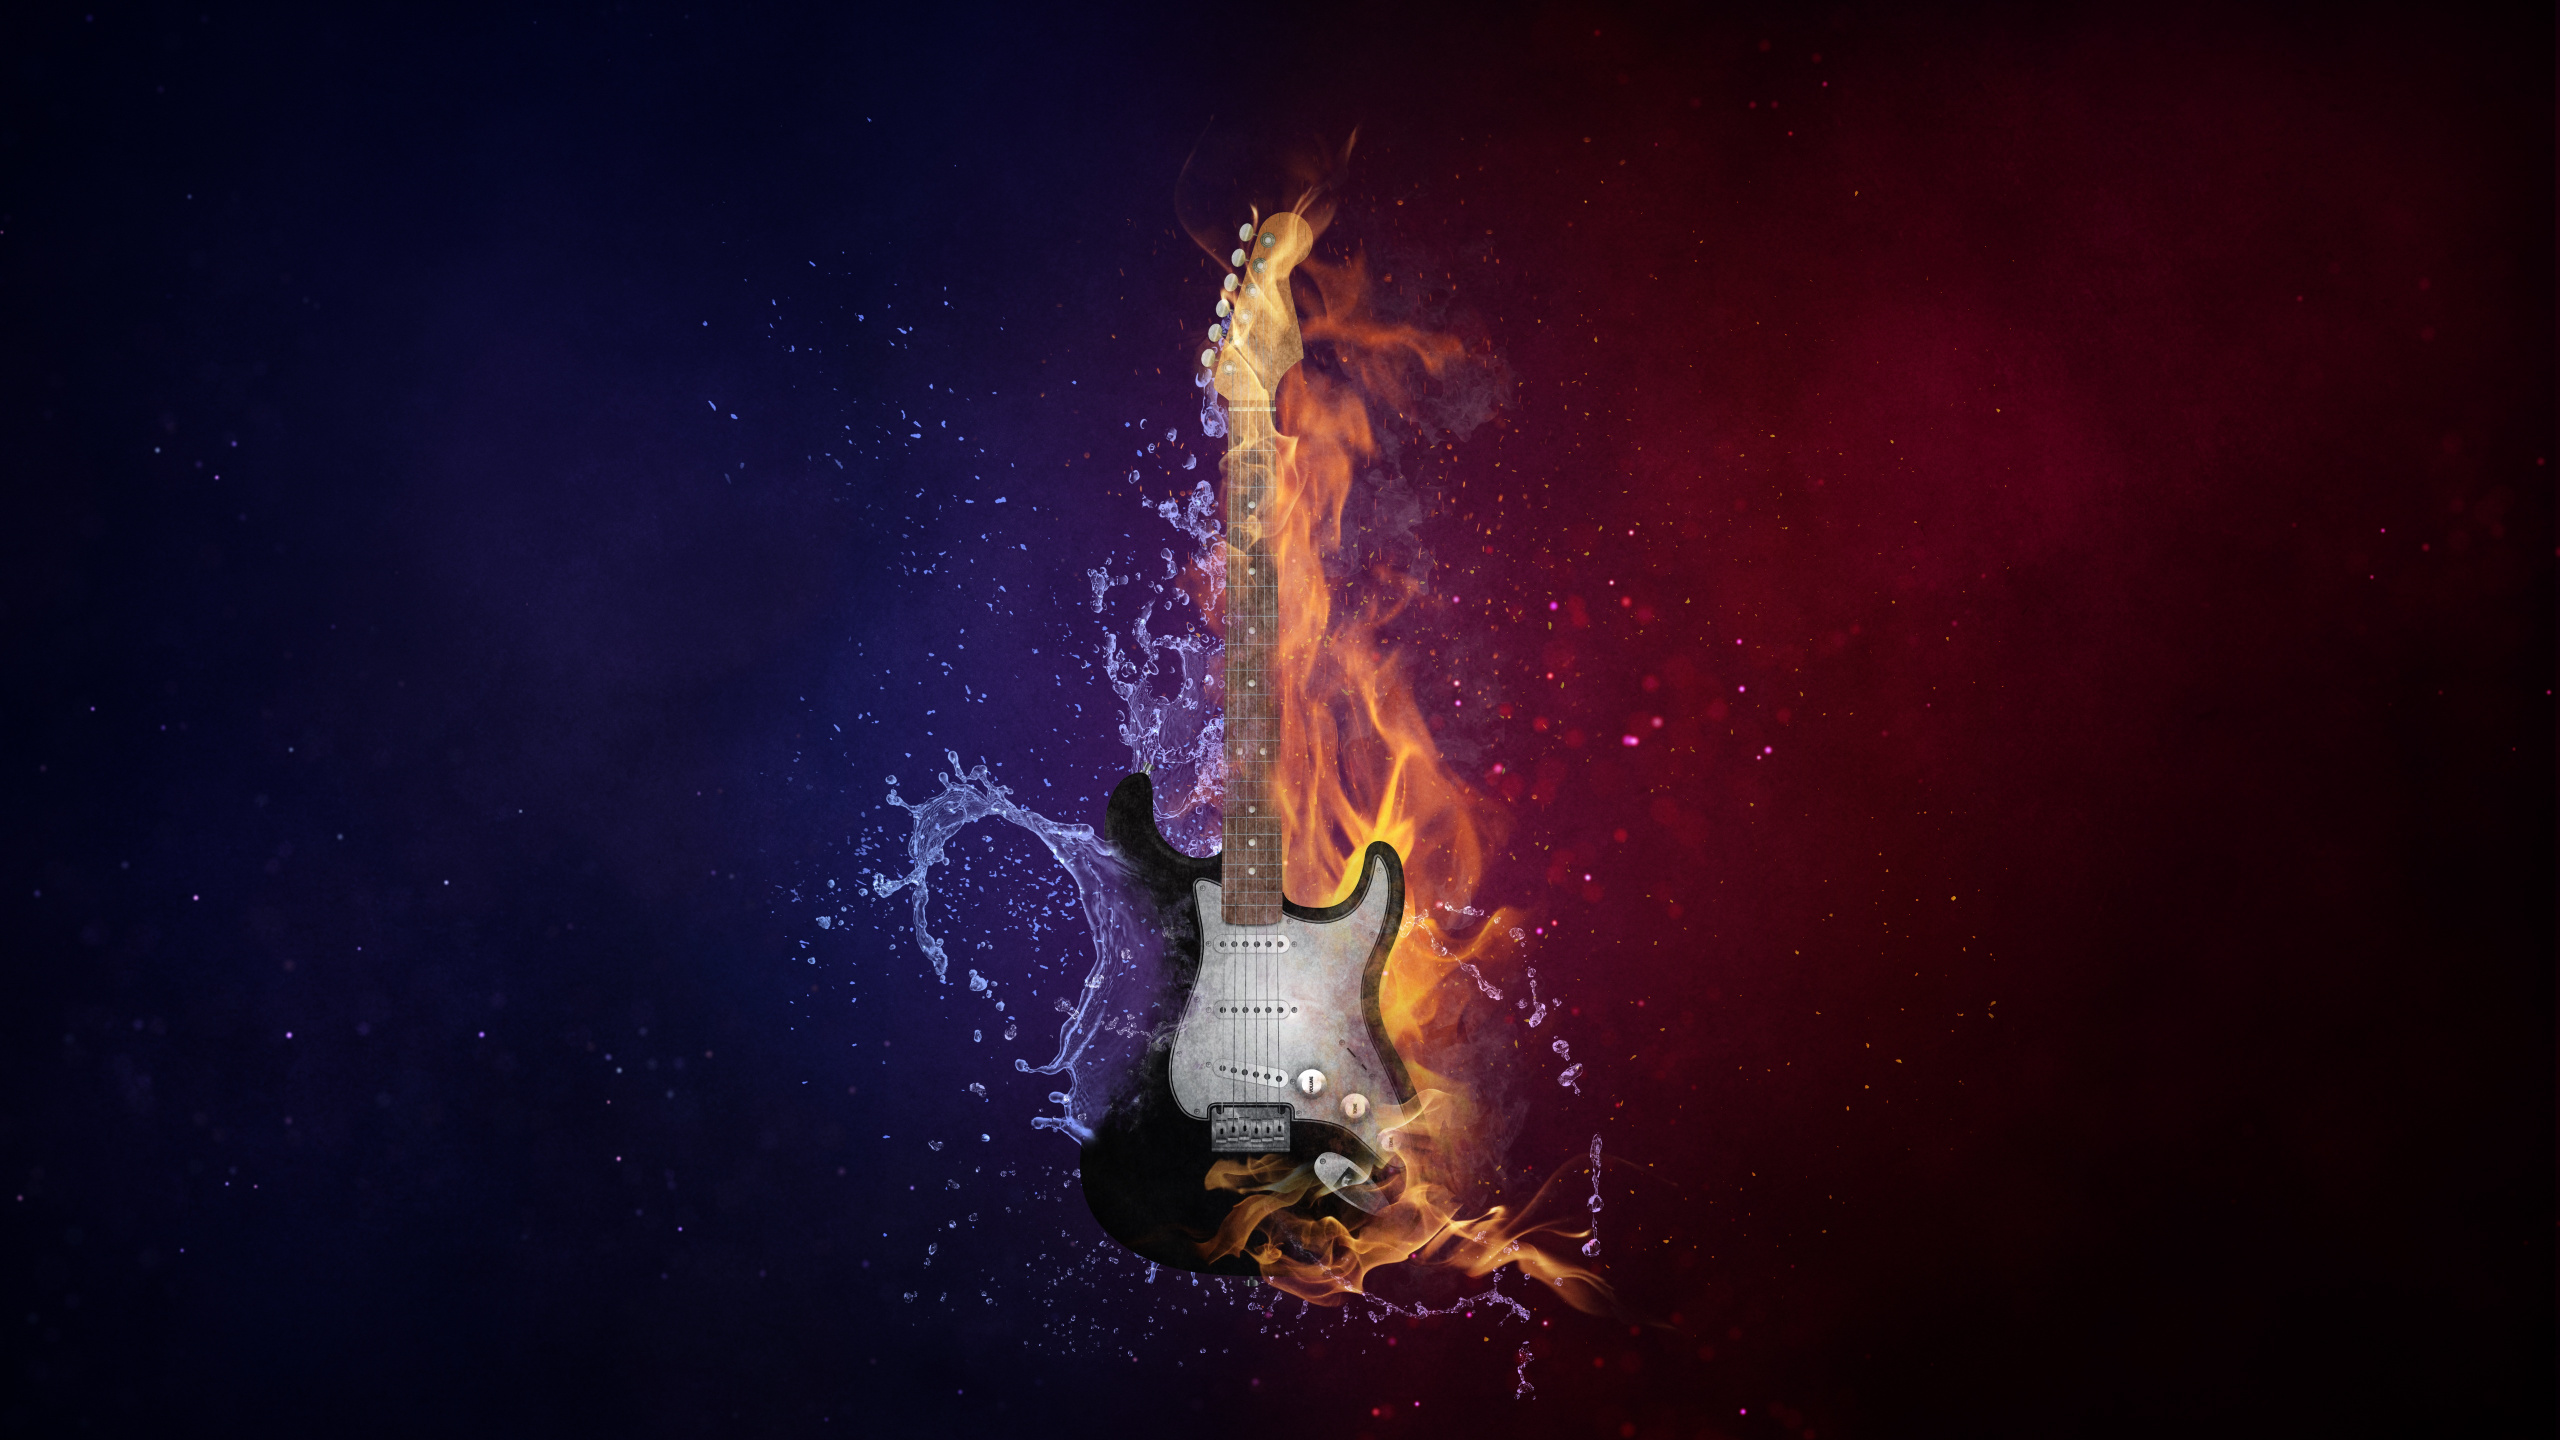 Guitarra, Calor, Llama, Fuego, Ambiente. Wallpaper in 2560x1440 Resolution